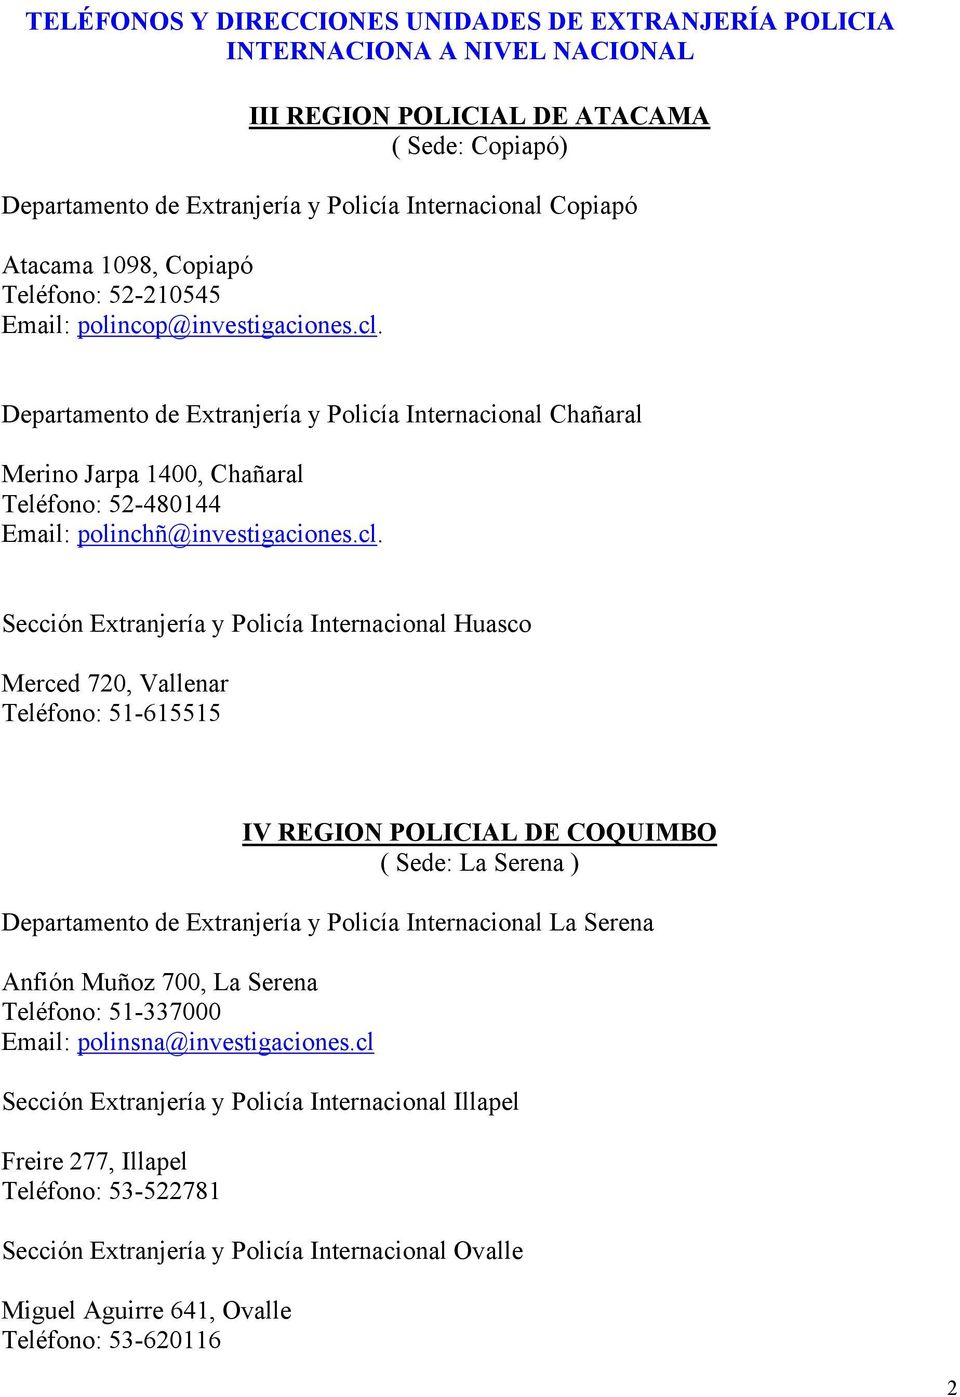 Sección Extranjería y Policía Internacional Huasco Merced 720, Vallenar Teléfono: 51-615515 IV REGION POLICIAL DE COQUIMBO ( Sede: La Serena ) Departamento de Extranjería y Policía Internacional La